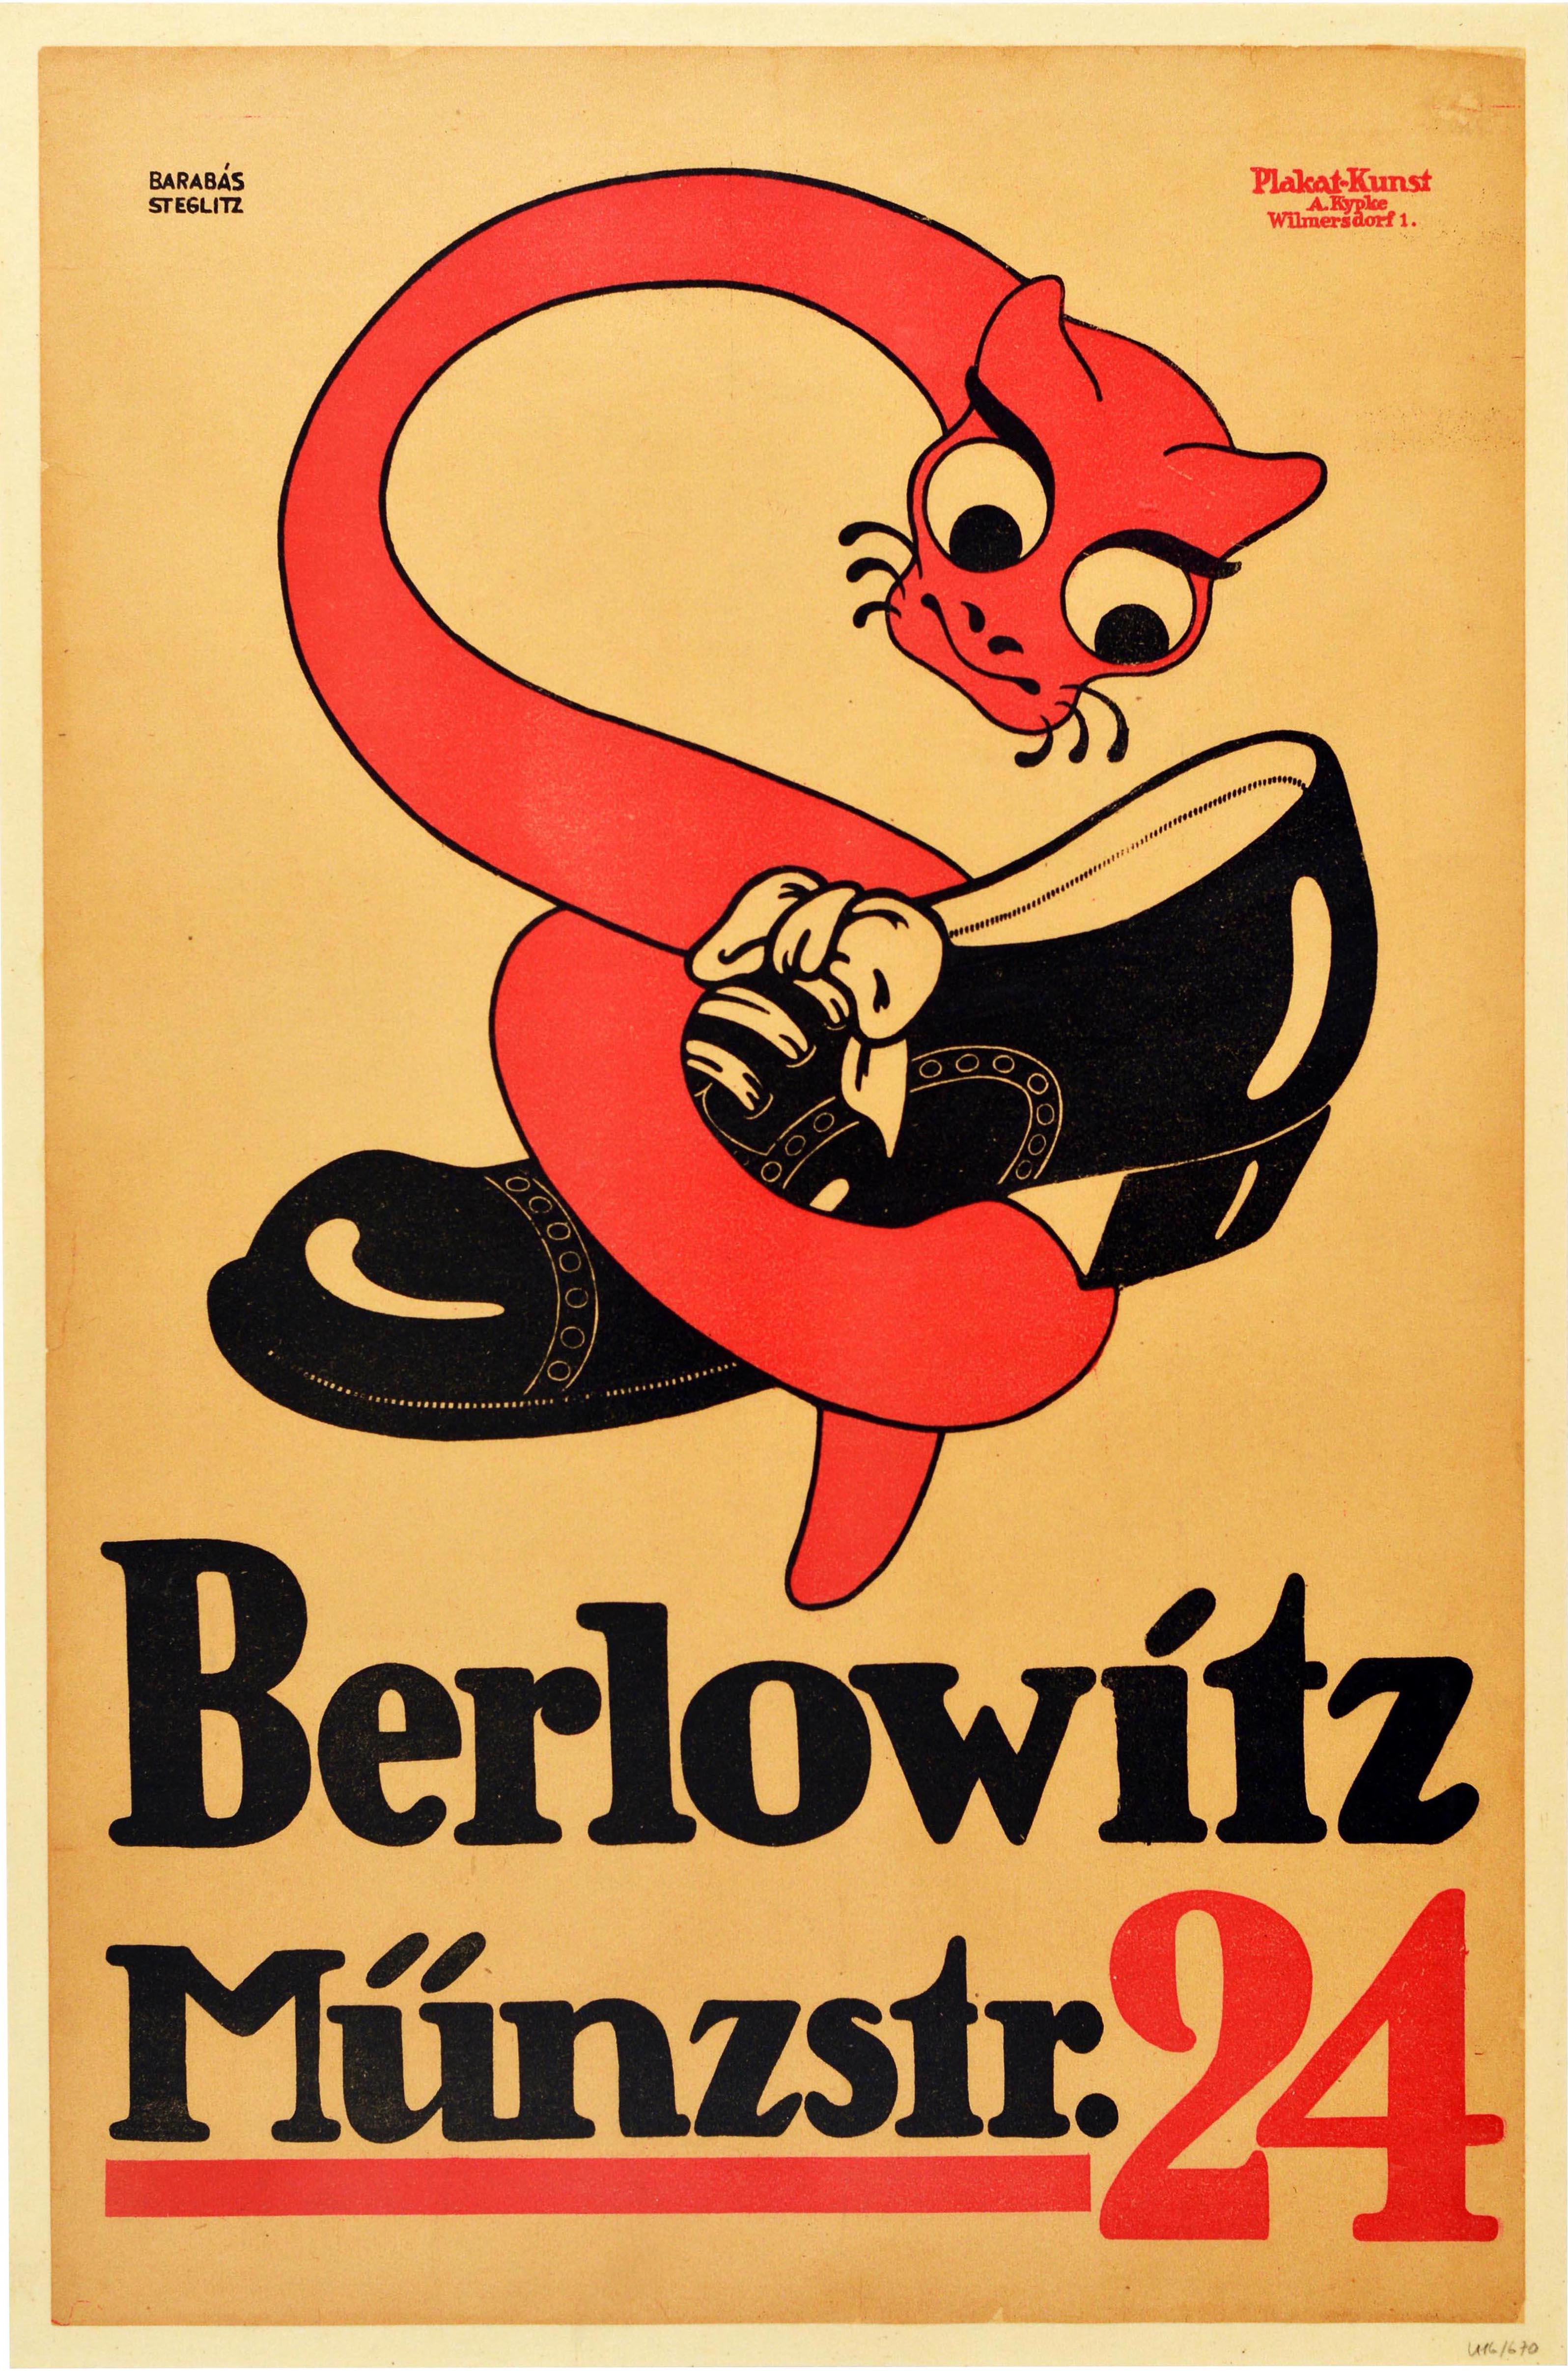 Originales antikes Werbeplakat für die Schuhmacherei Berlowitz in der Munzstraße 24 in Berlin mit einem großartigen Design, das ein Bild im Cartoon-Stil einer roten schlangenähnlichen Kreatur mit großen Augen zeigt, die sich um einen glänzenden